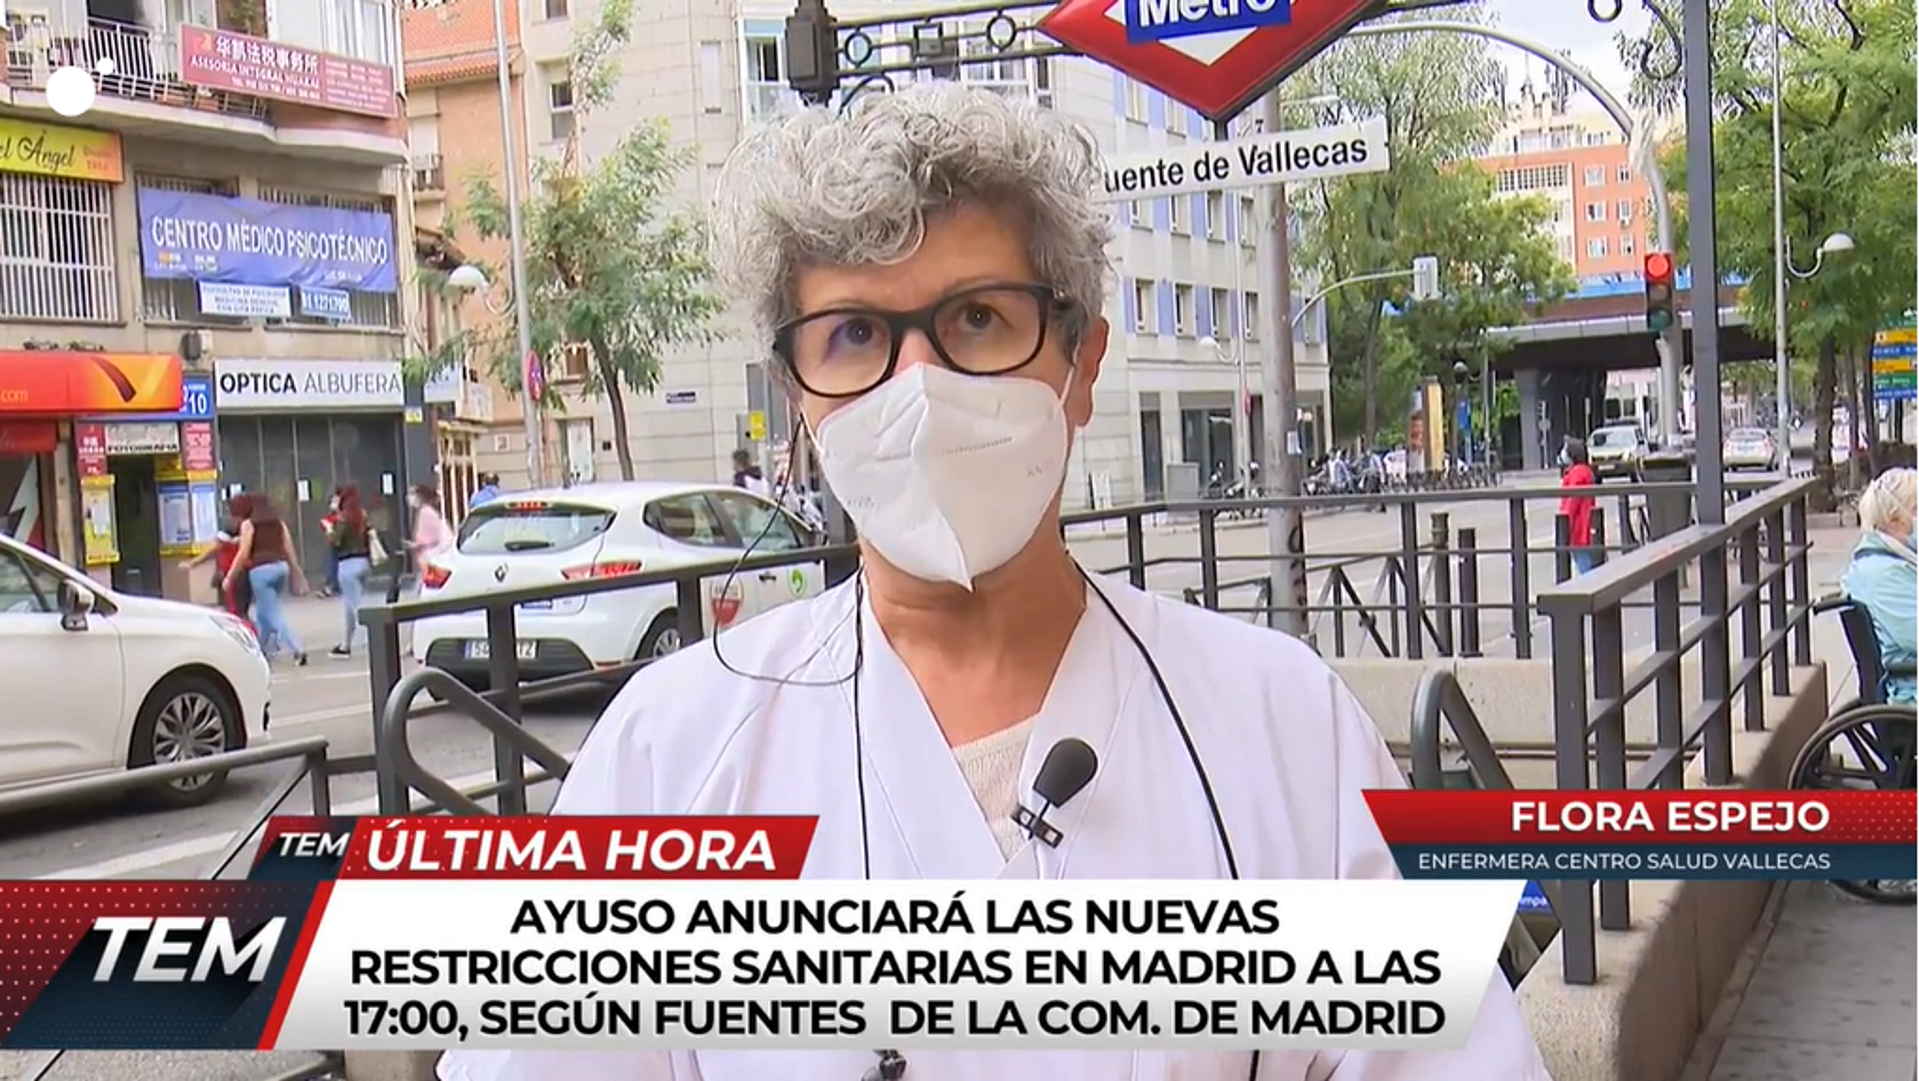 Una infermera de Madrid, desesperada: "La situació és absolutament caòtica"